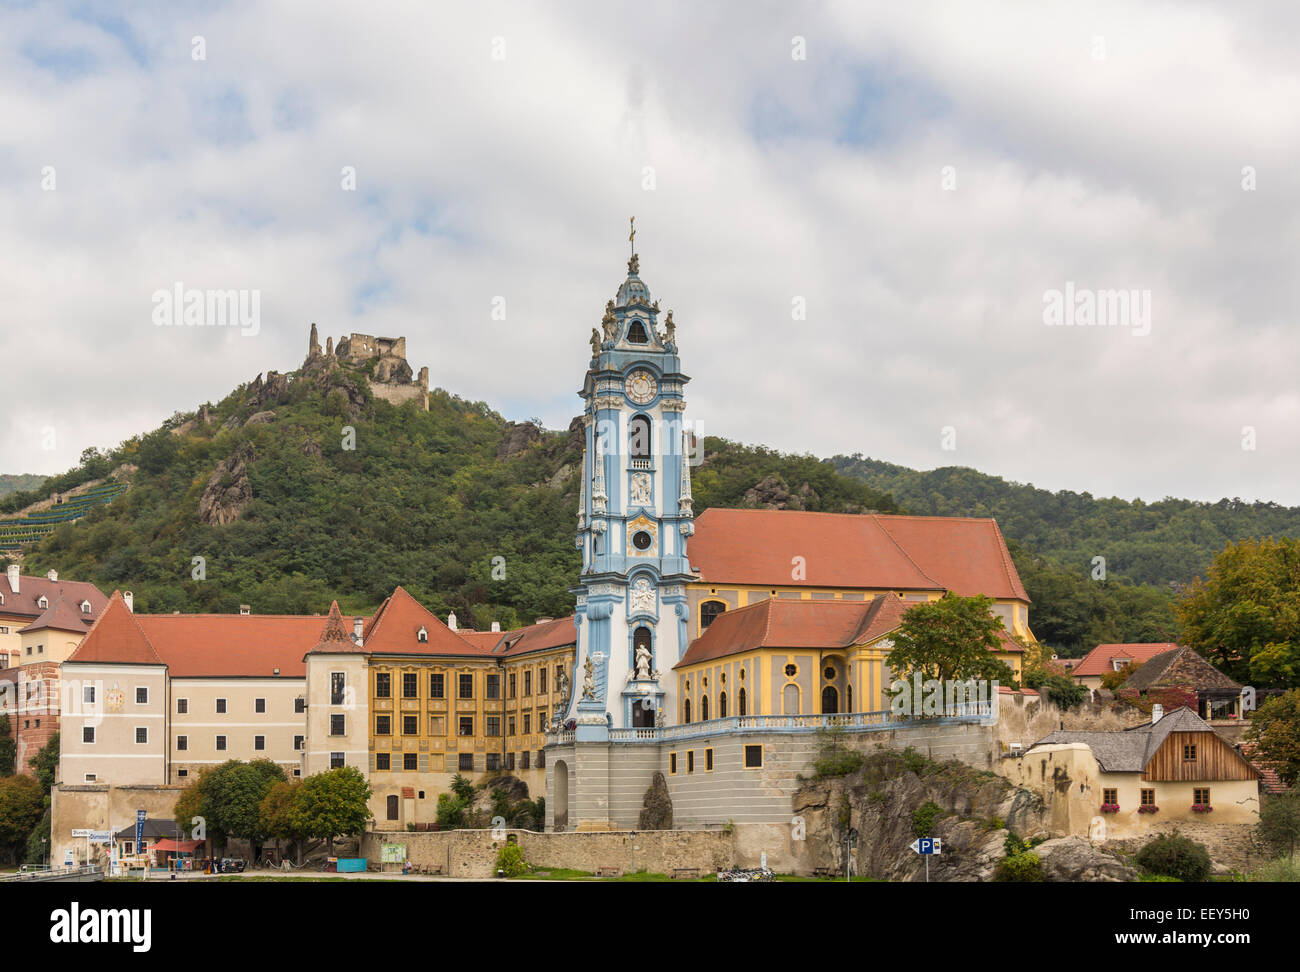 Durnstein, Autriche - ornate church, le château et les bâtiments sur les rives du Danube Banque D'Images